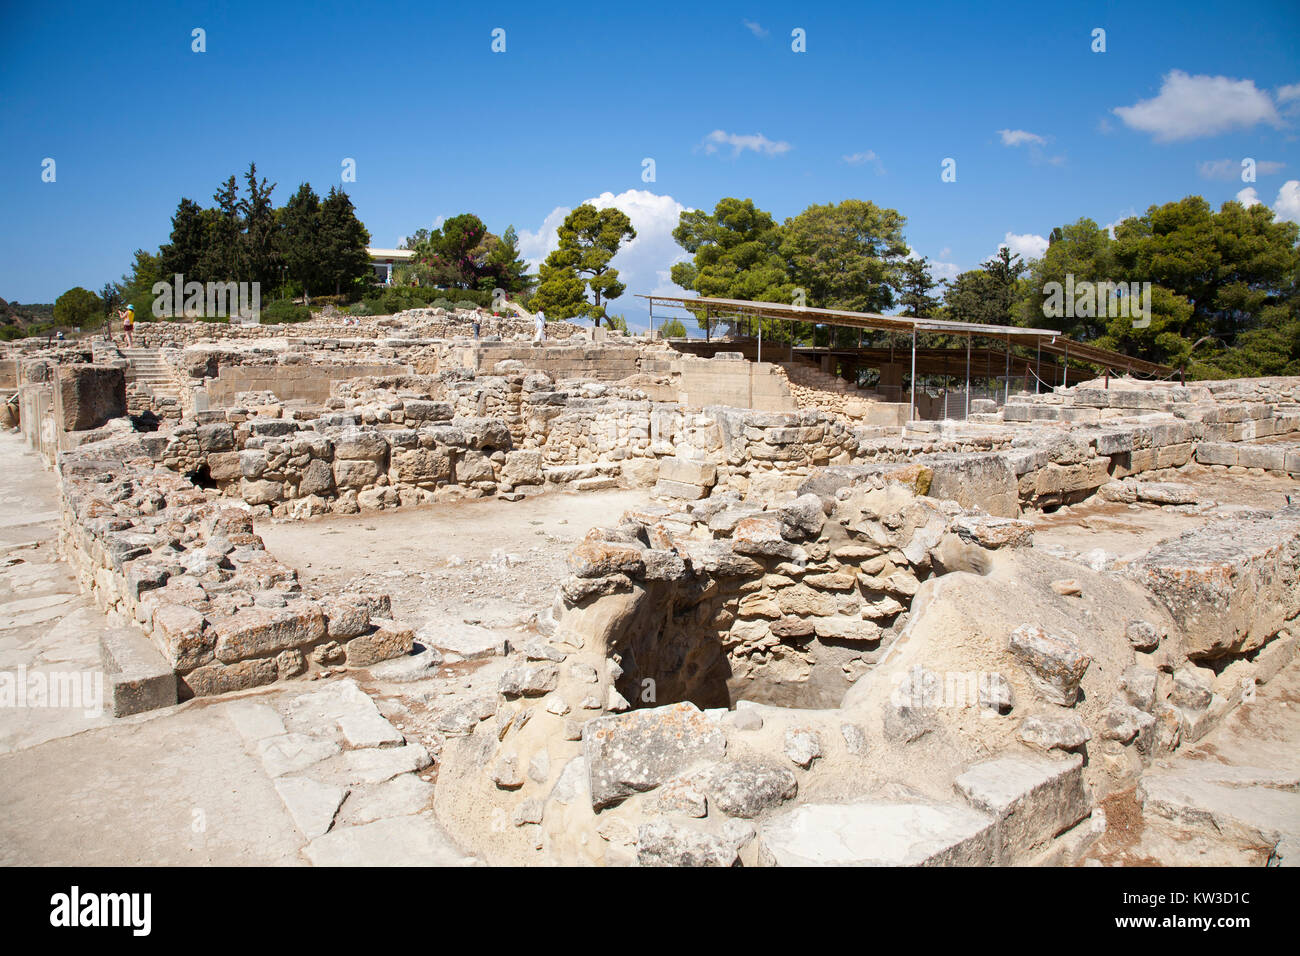 Festos, archäologischen Bereich, Insel Kreta, Griechenland, Europa Stockfoto